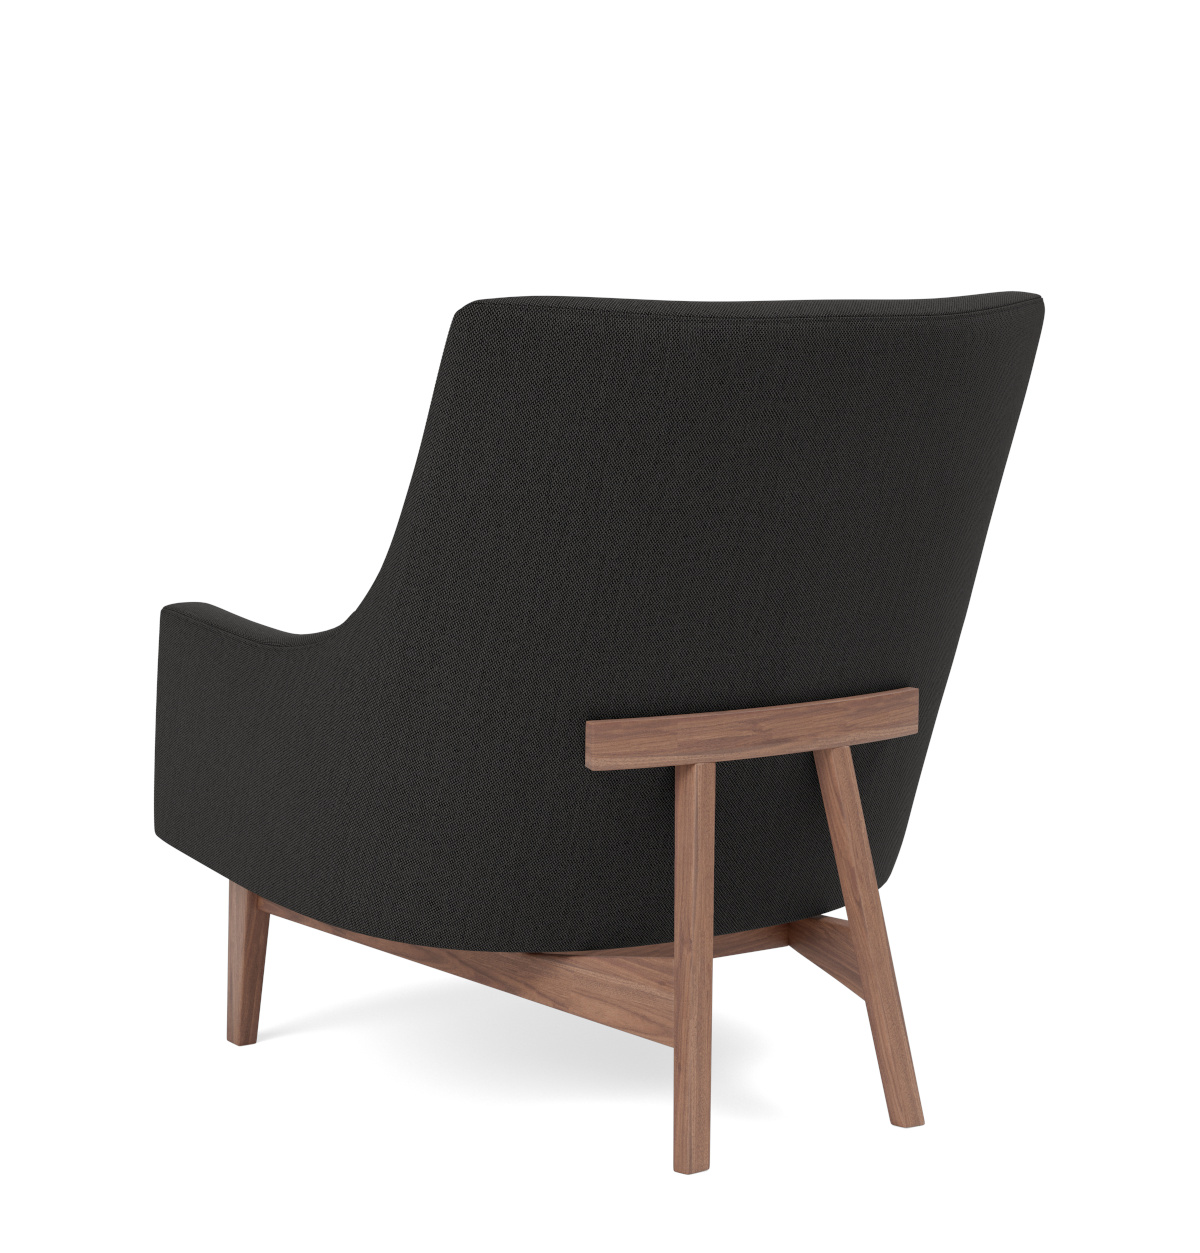 A-Chair Wood Base, eiche lackiert / re-wool 358